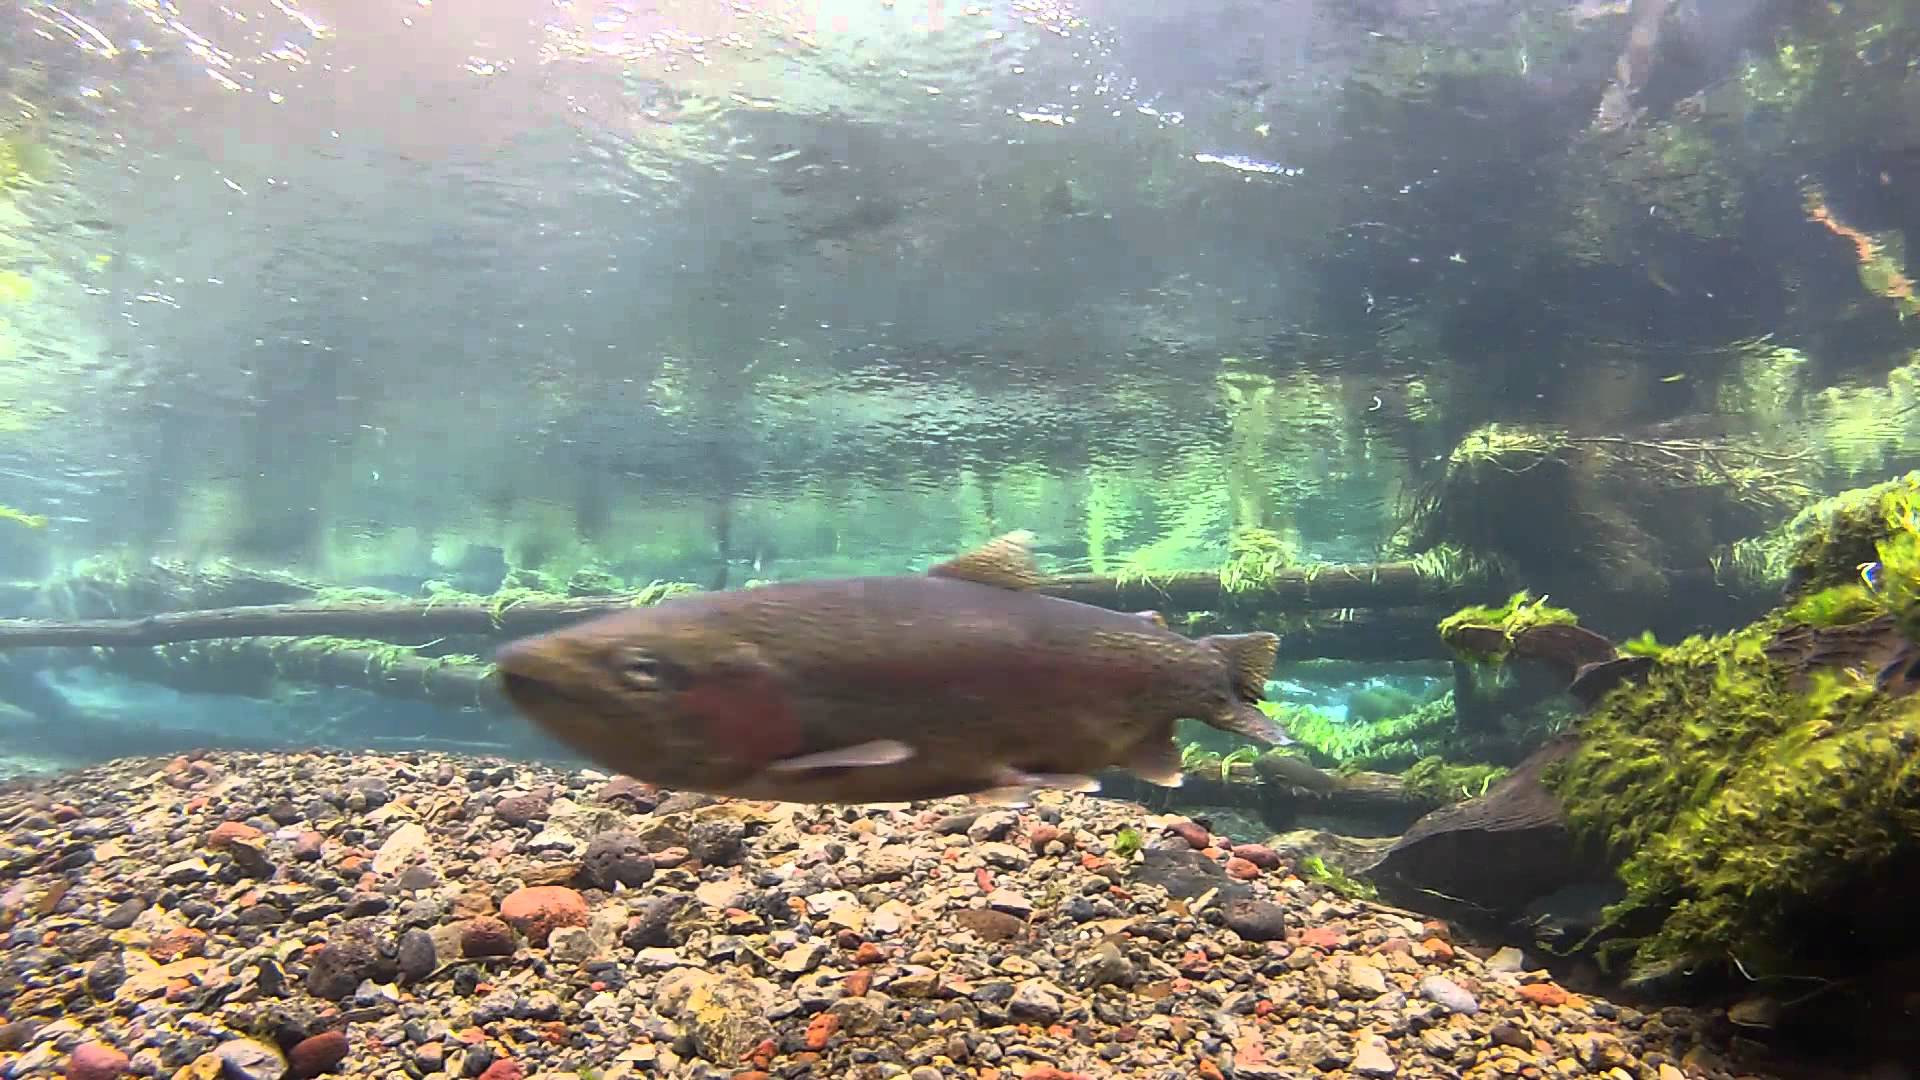 Underwater camera flyfishing 1080p- 2014 best fishing video winner